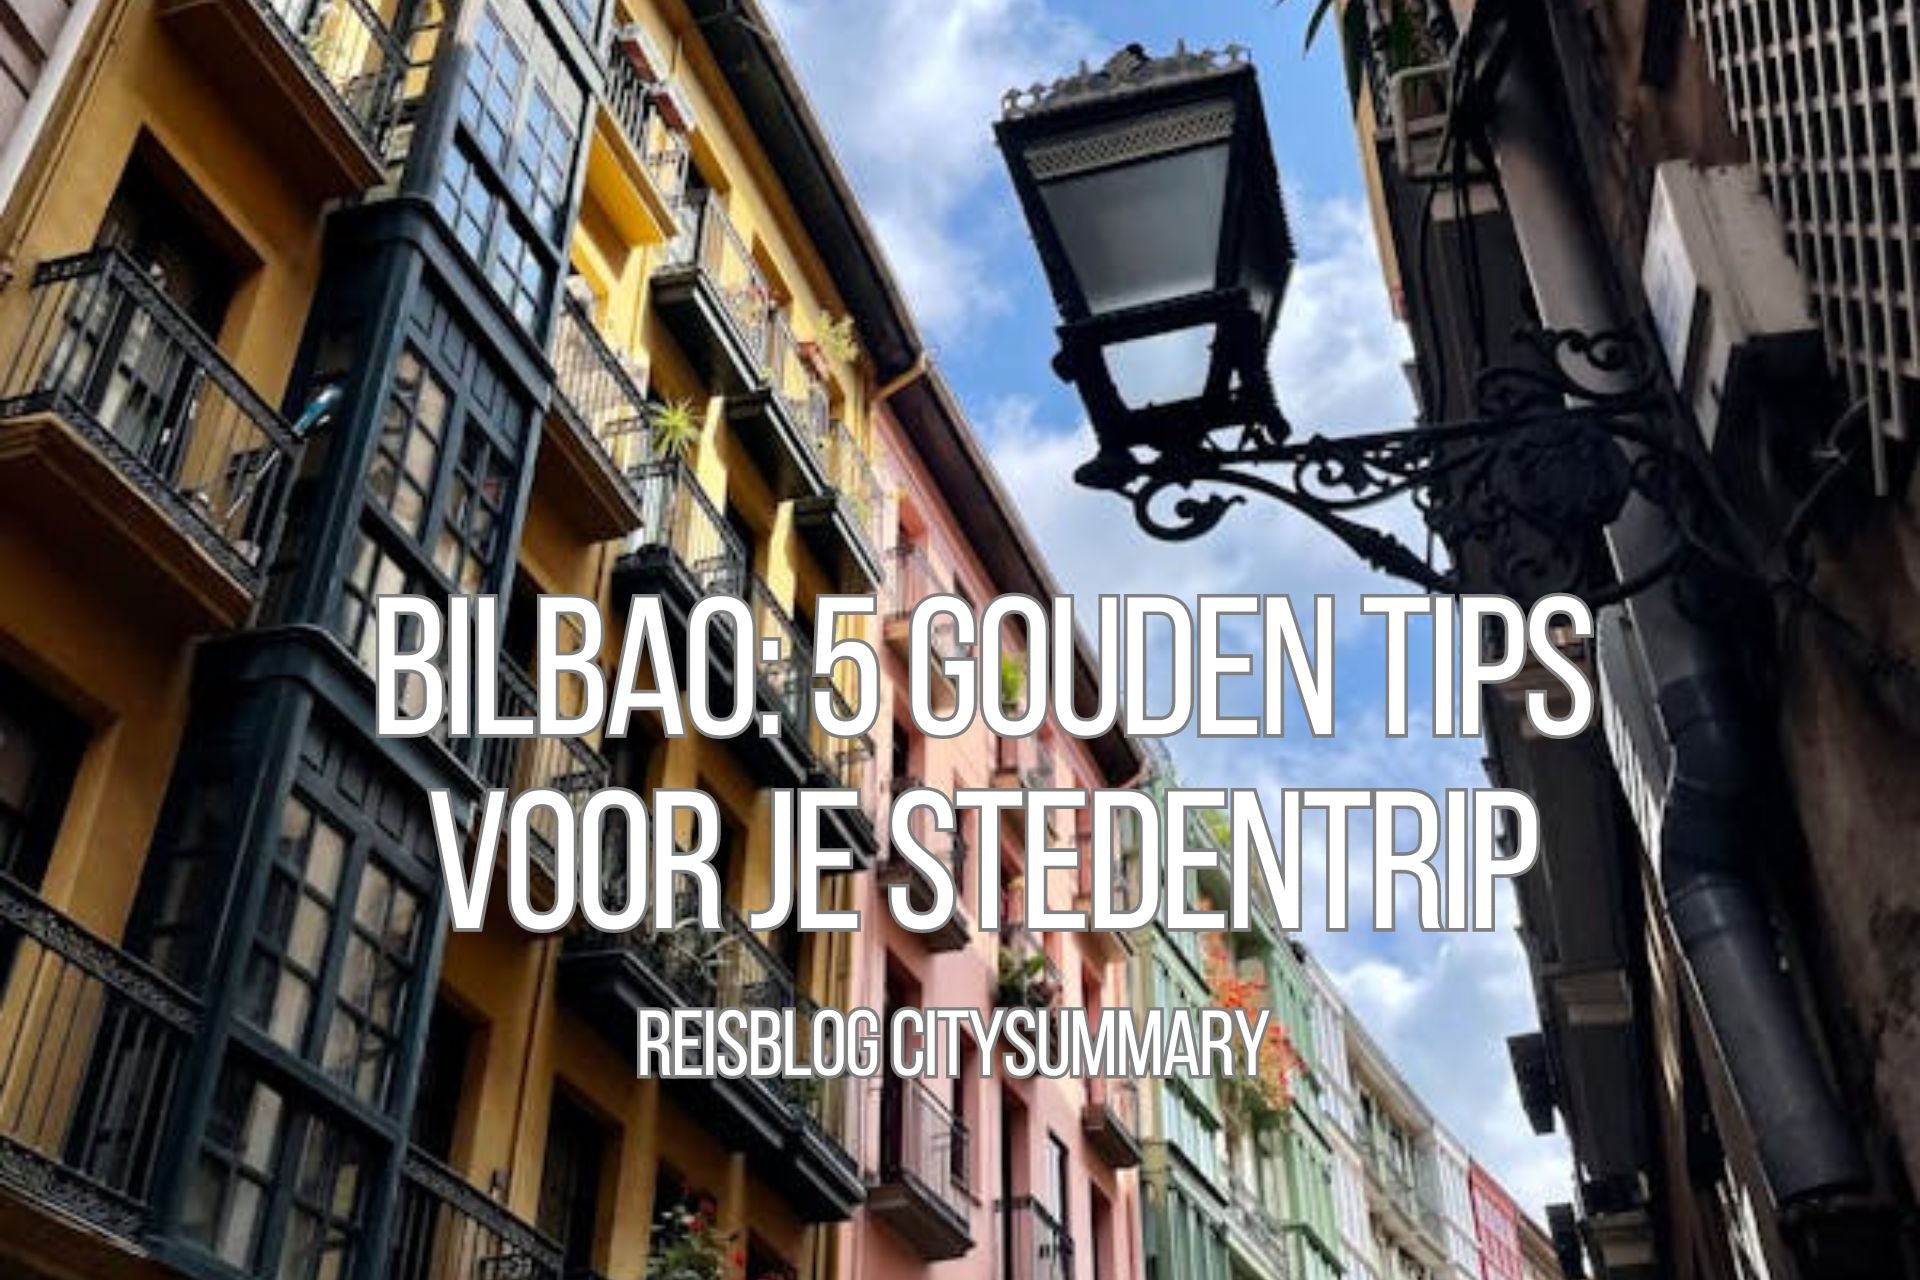 Bilbao: 5 Gouden Tips voor je stedentrip